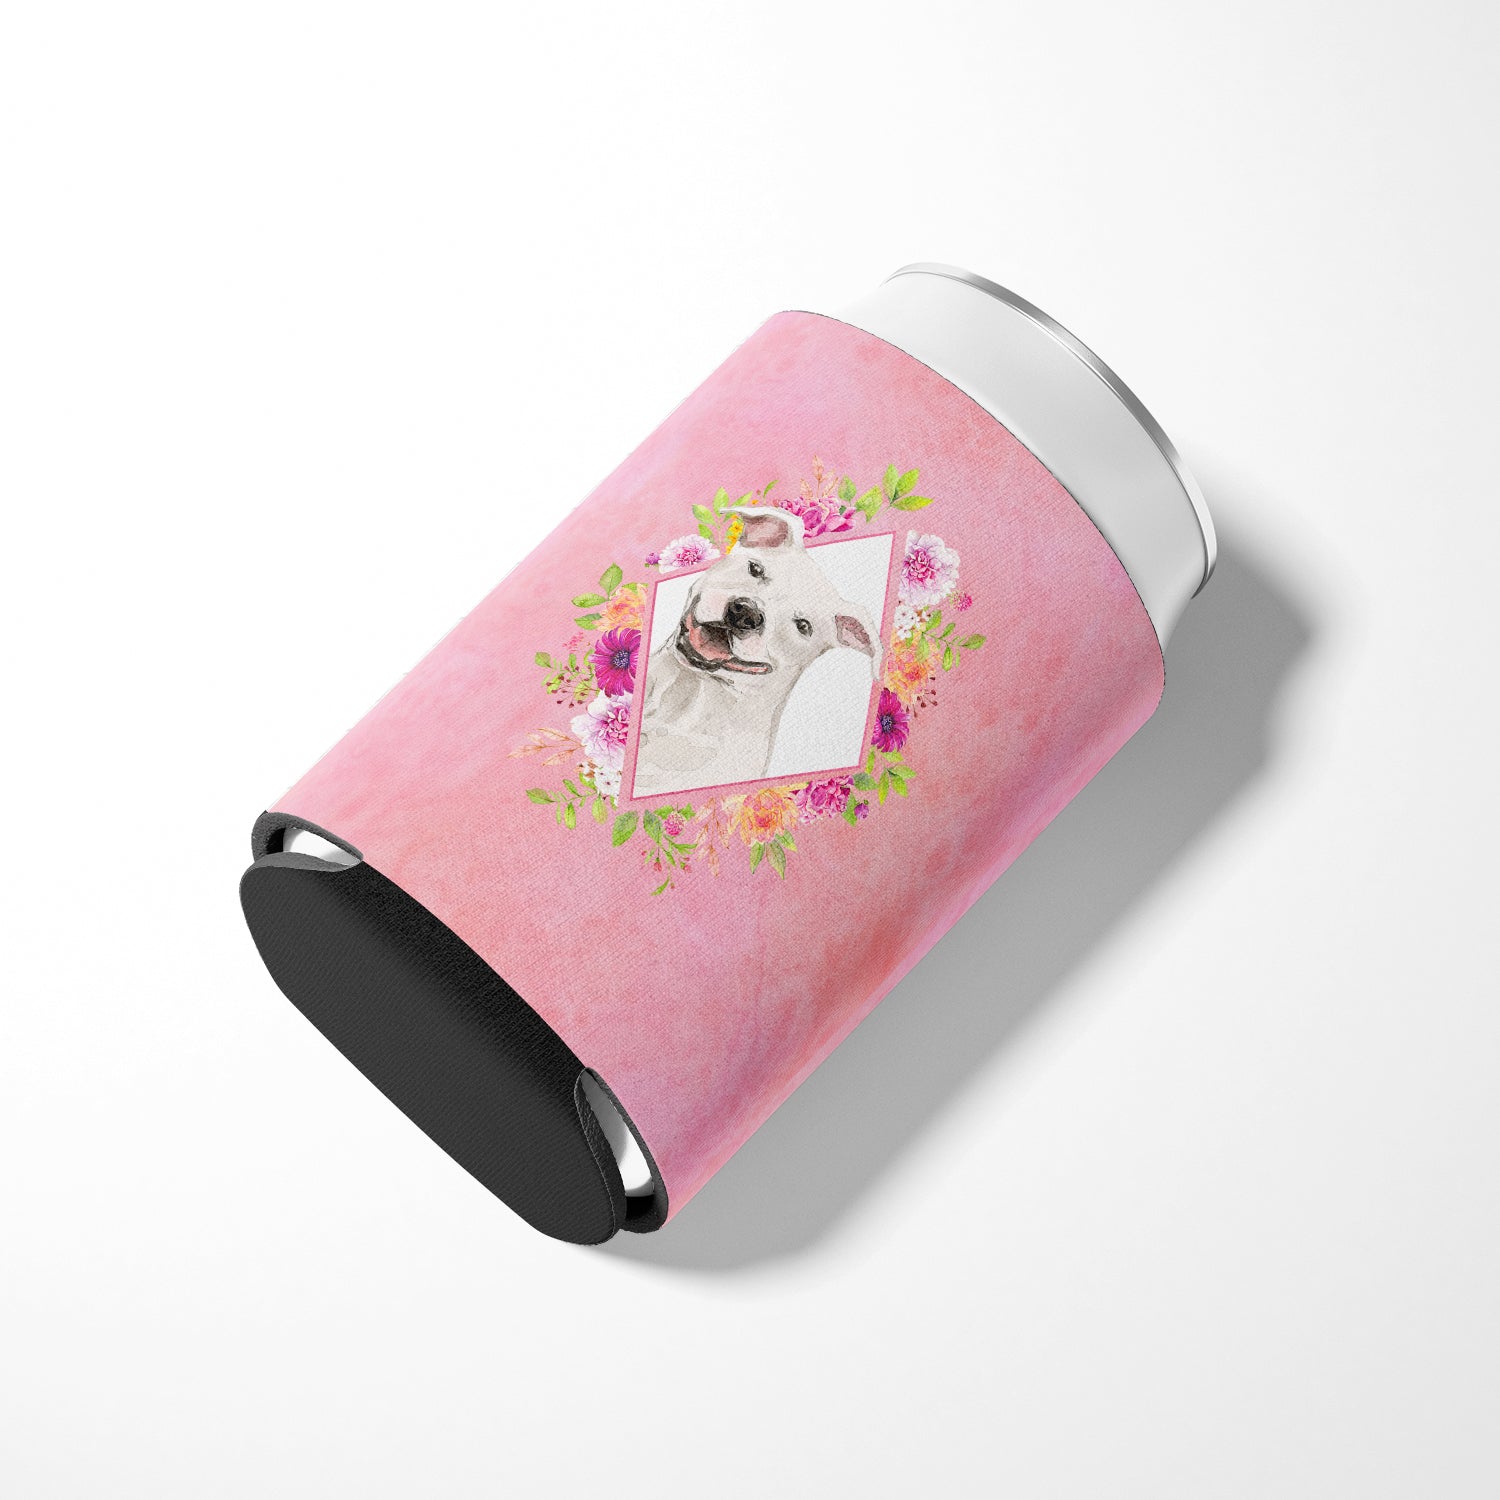 White Pit Bull Terrier Pink Flowers Can or Bottle Hugger CK4268CC